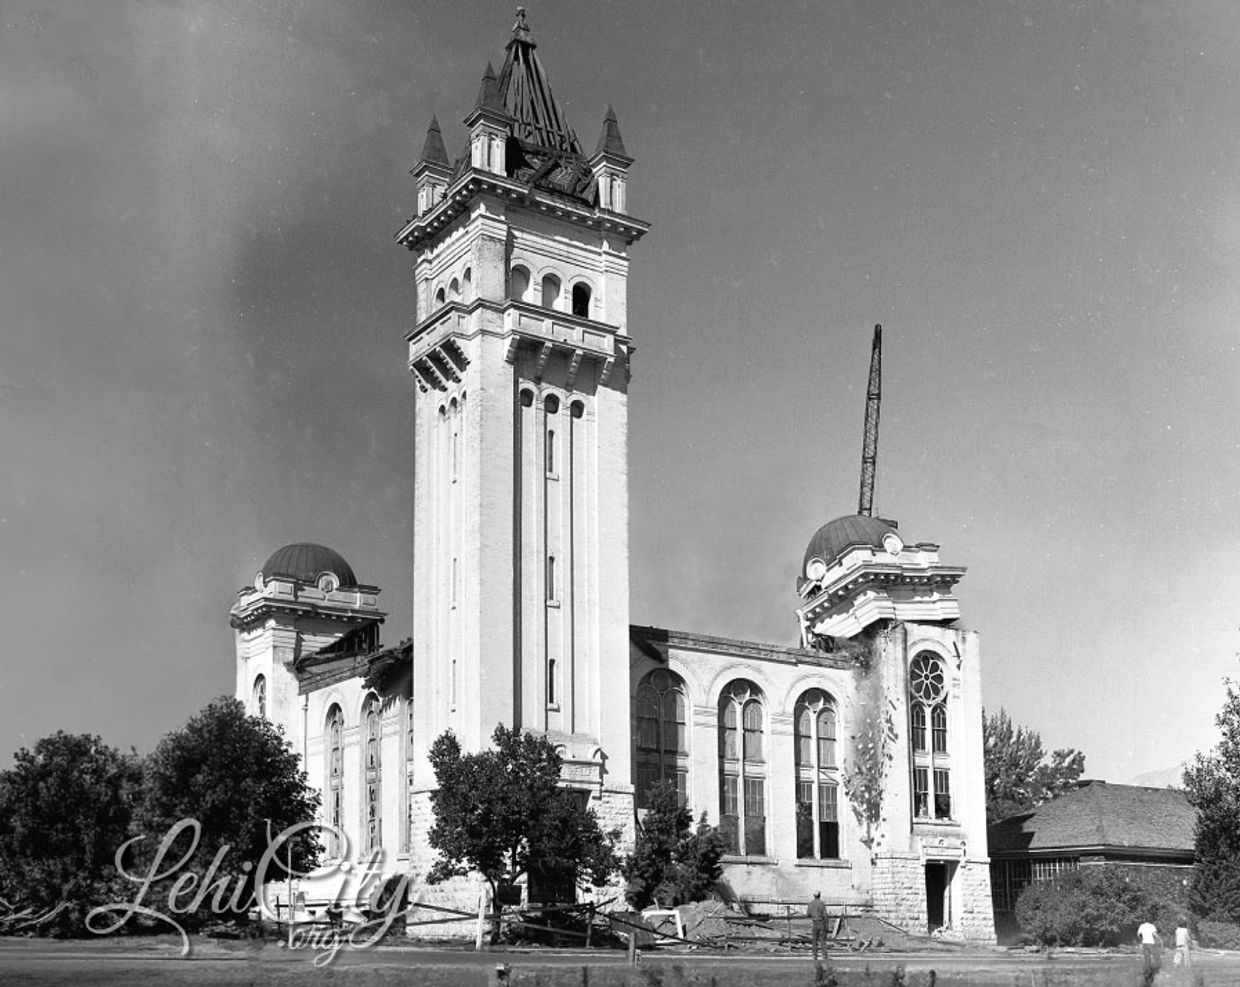 Lehi Tabernacle demolition in 1962